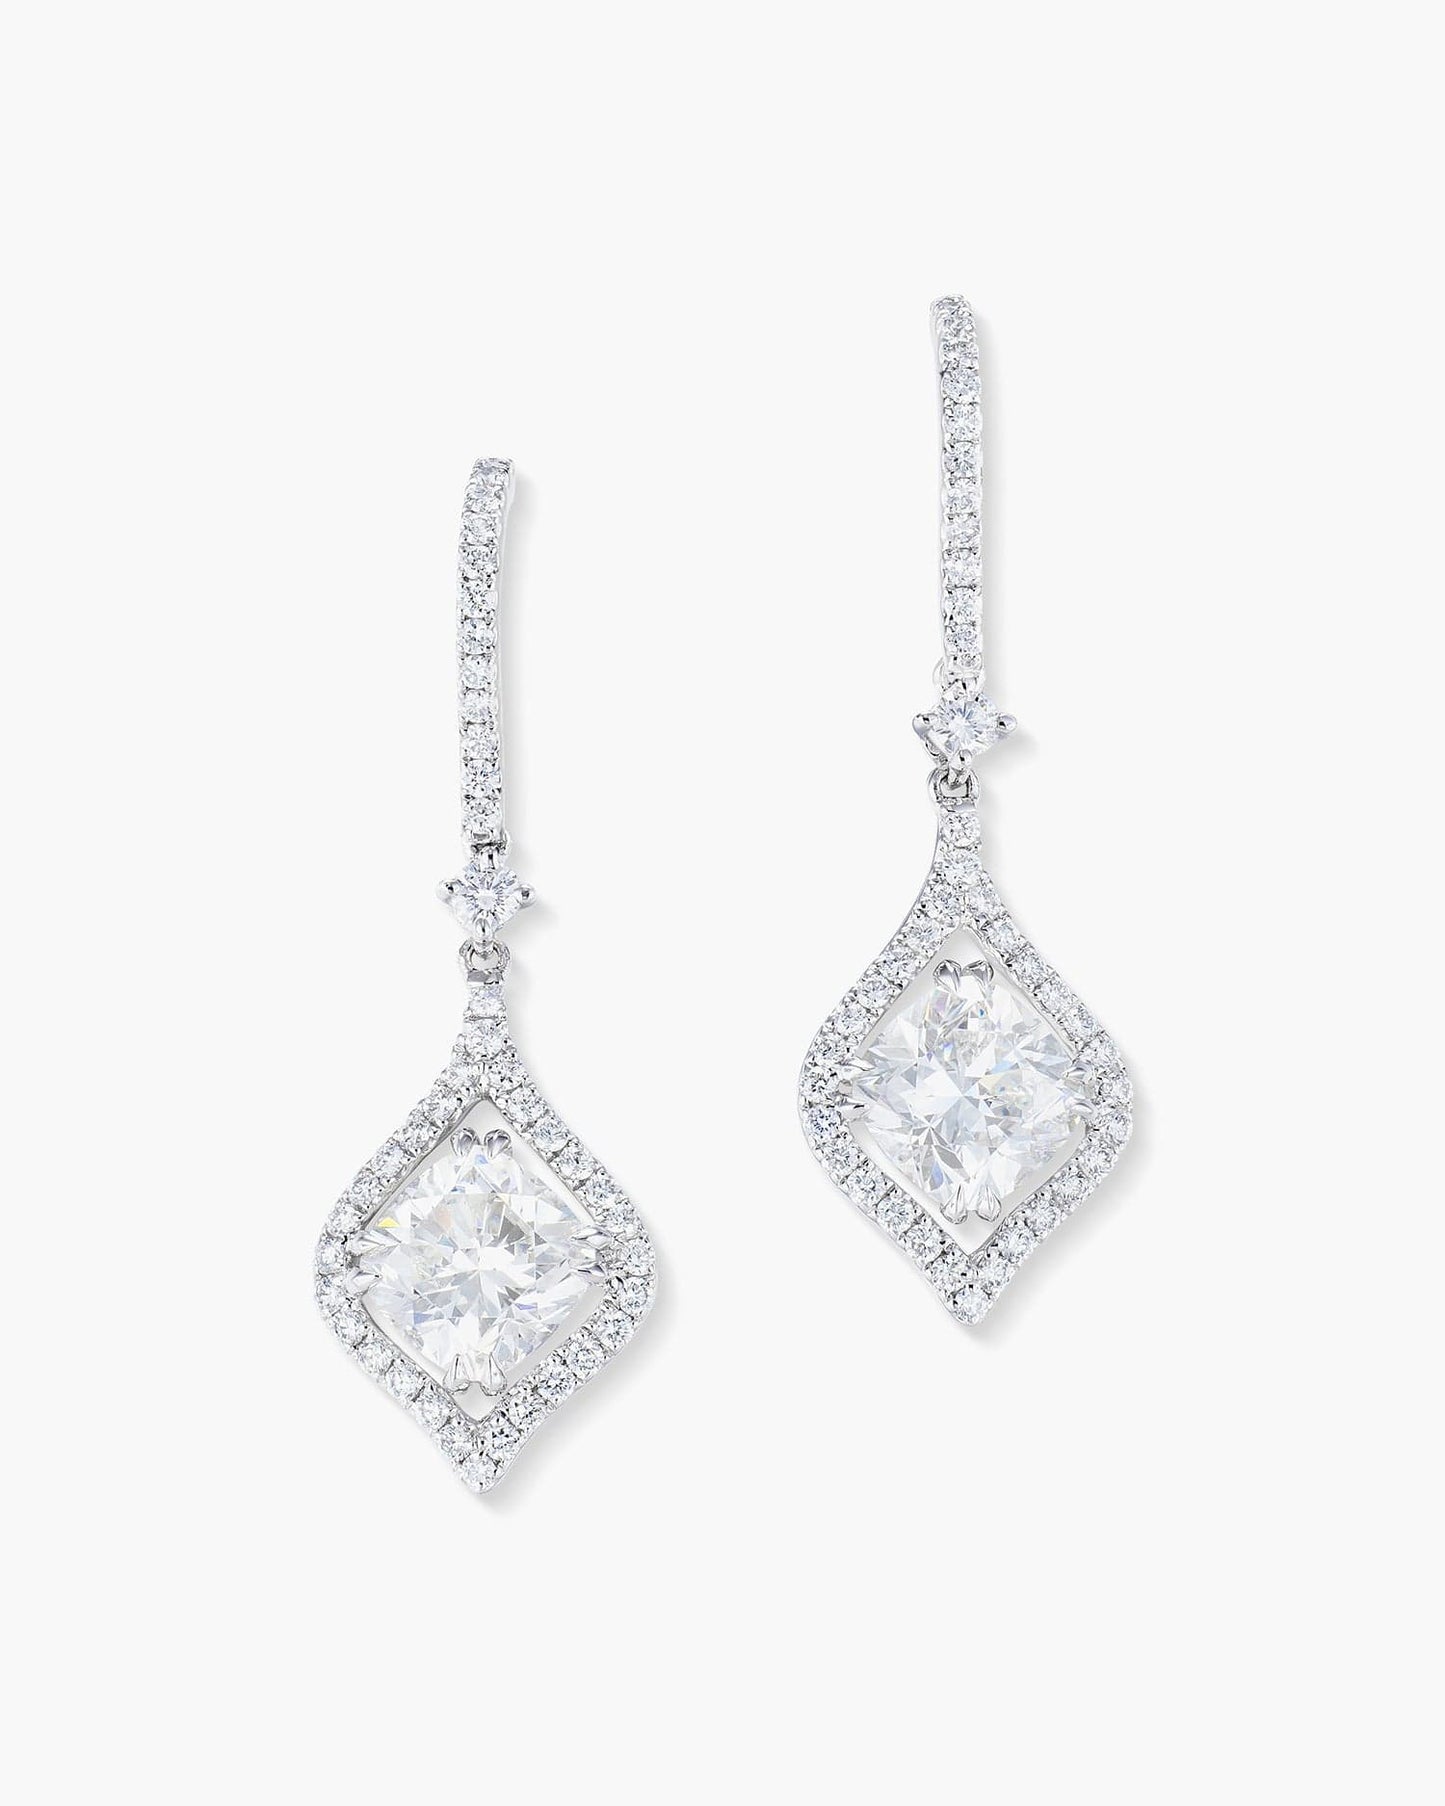 2.11 carat Cushion Cut Diamond Earrings